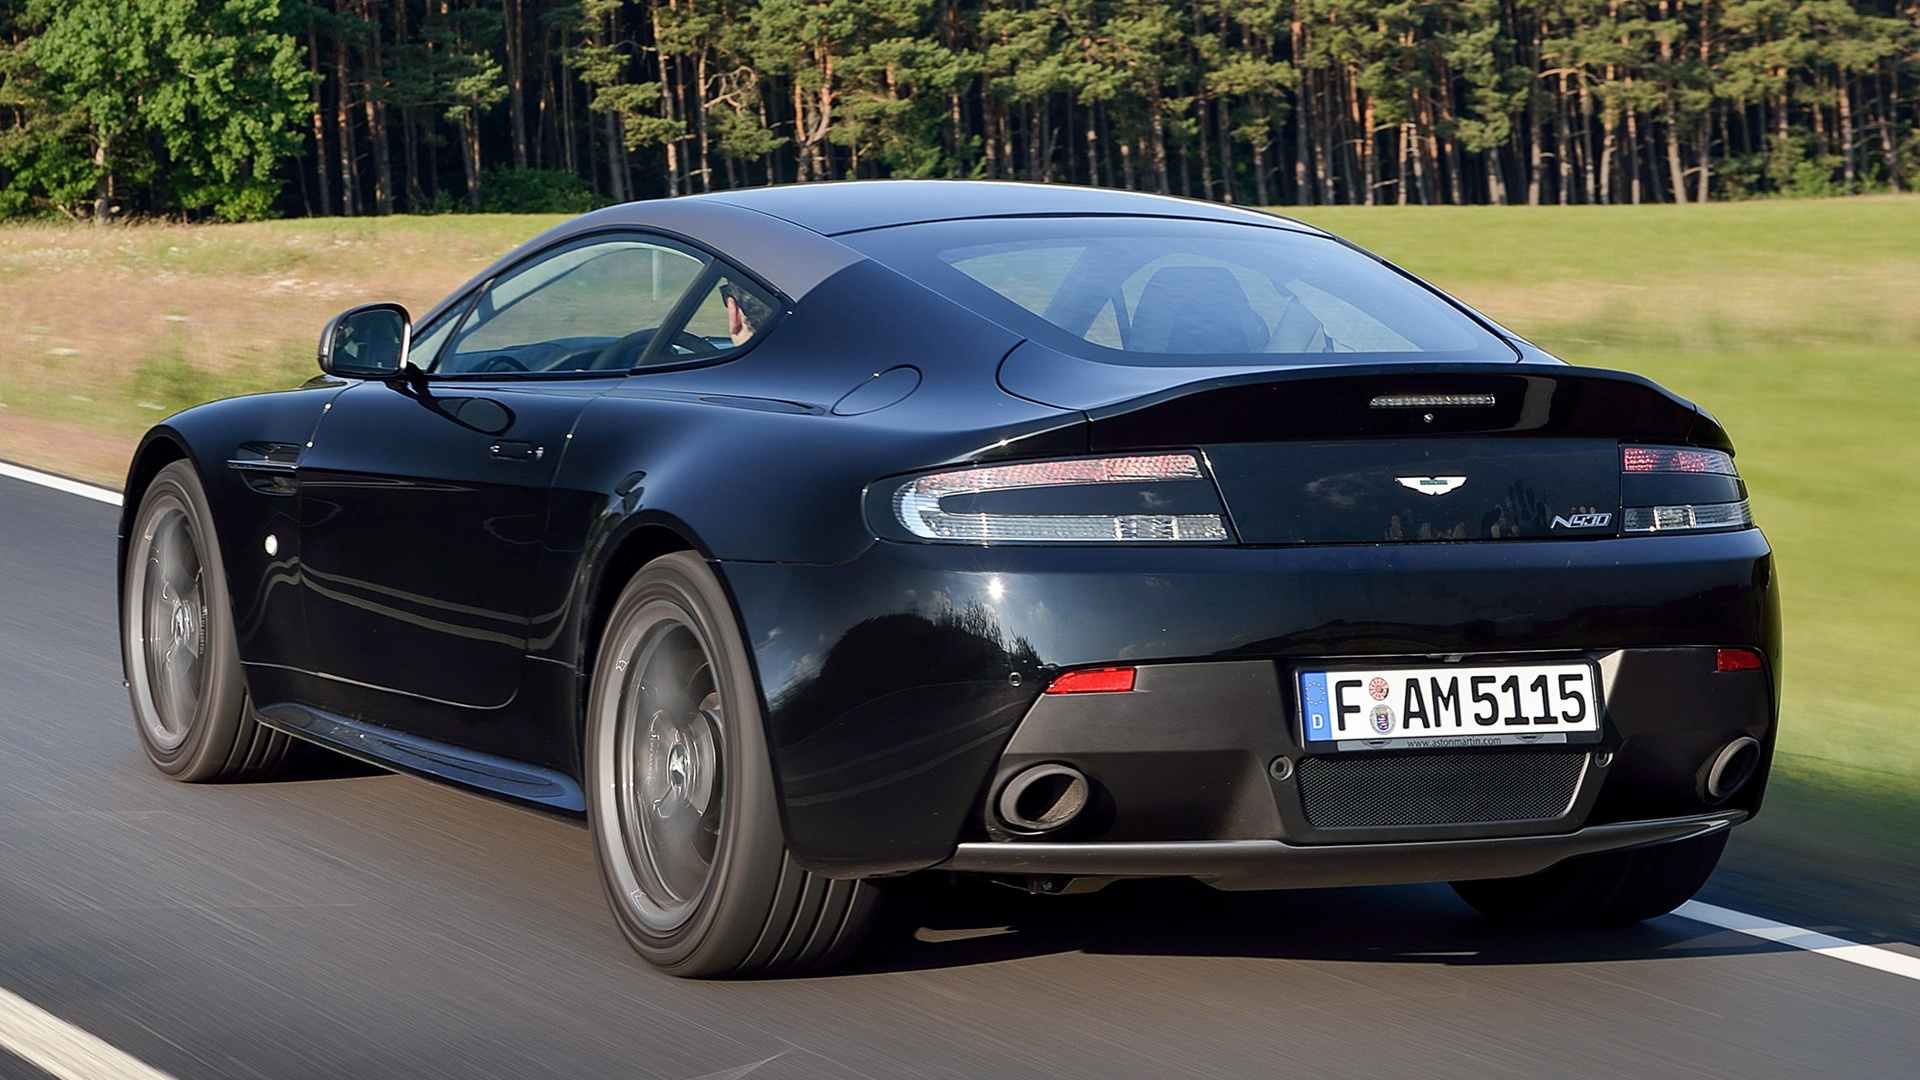 Aston Martin V8 Vantage N430 Wallpapers